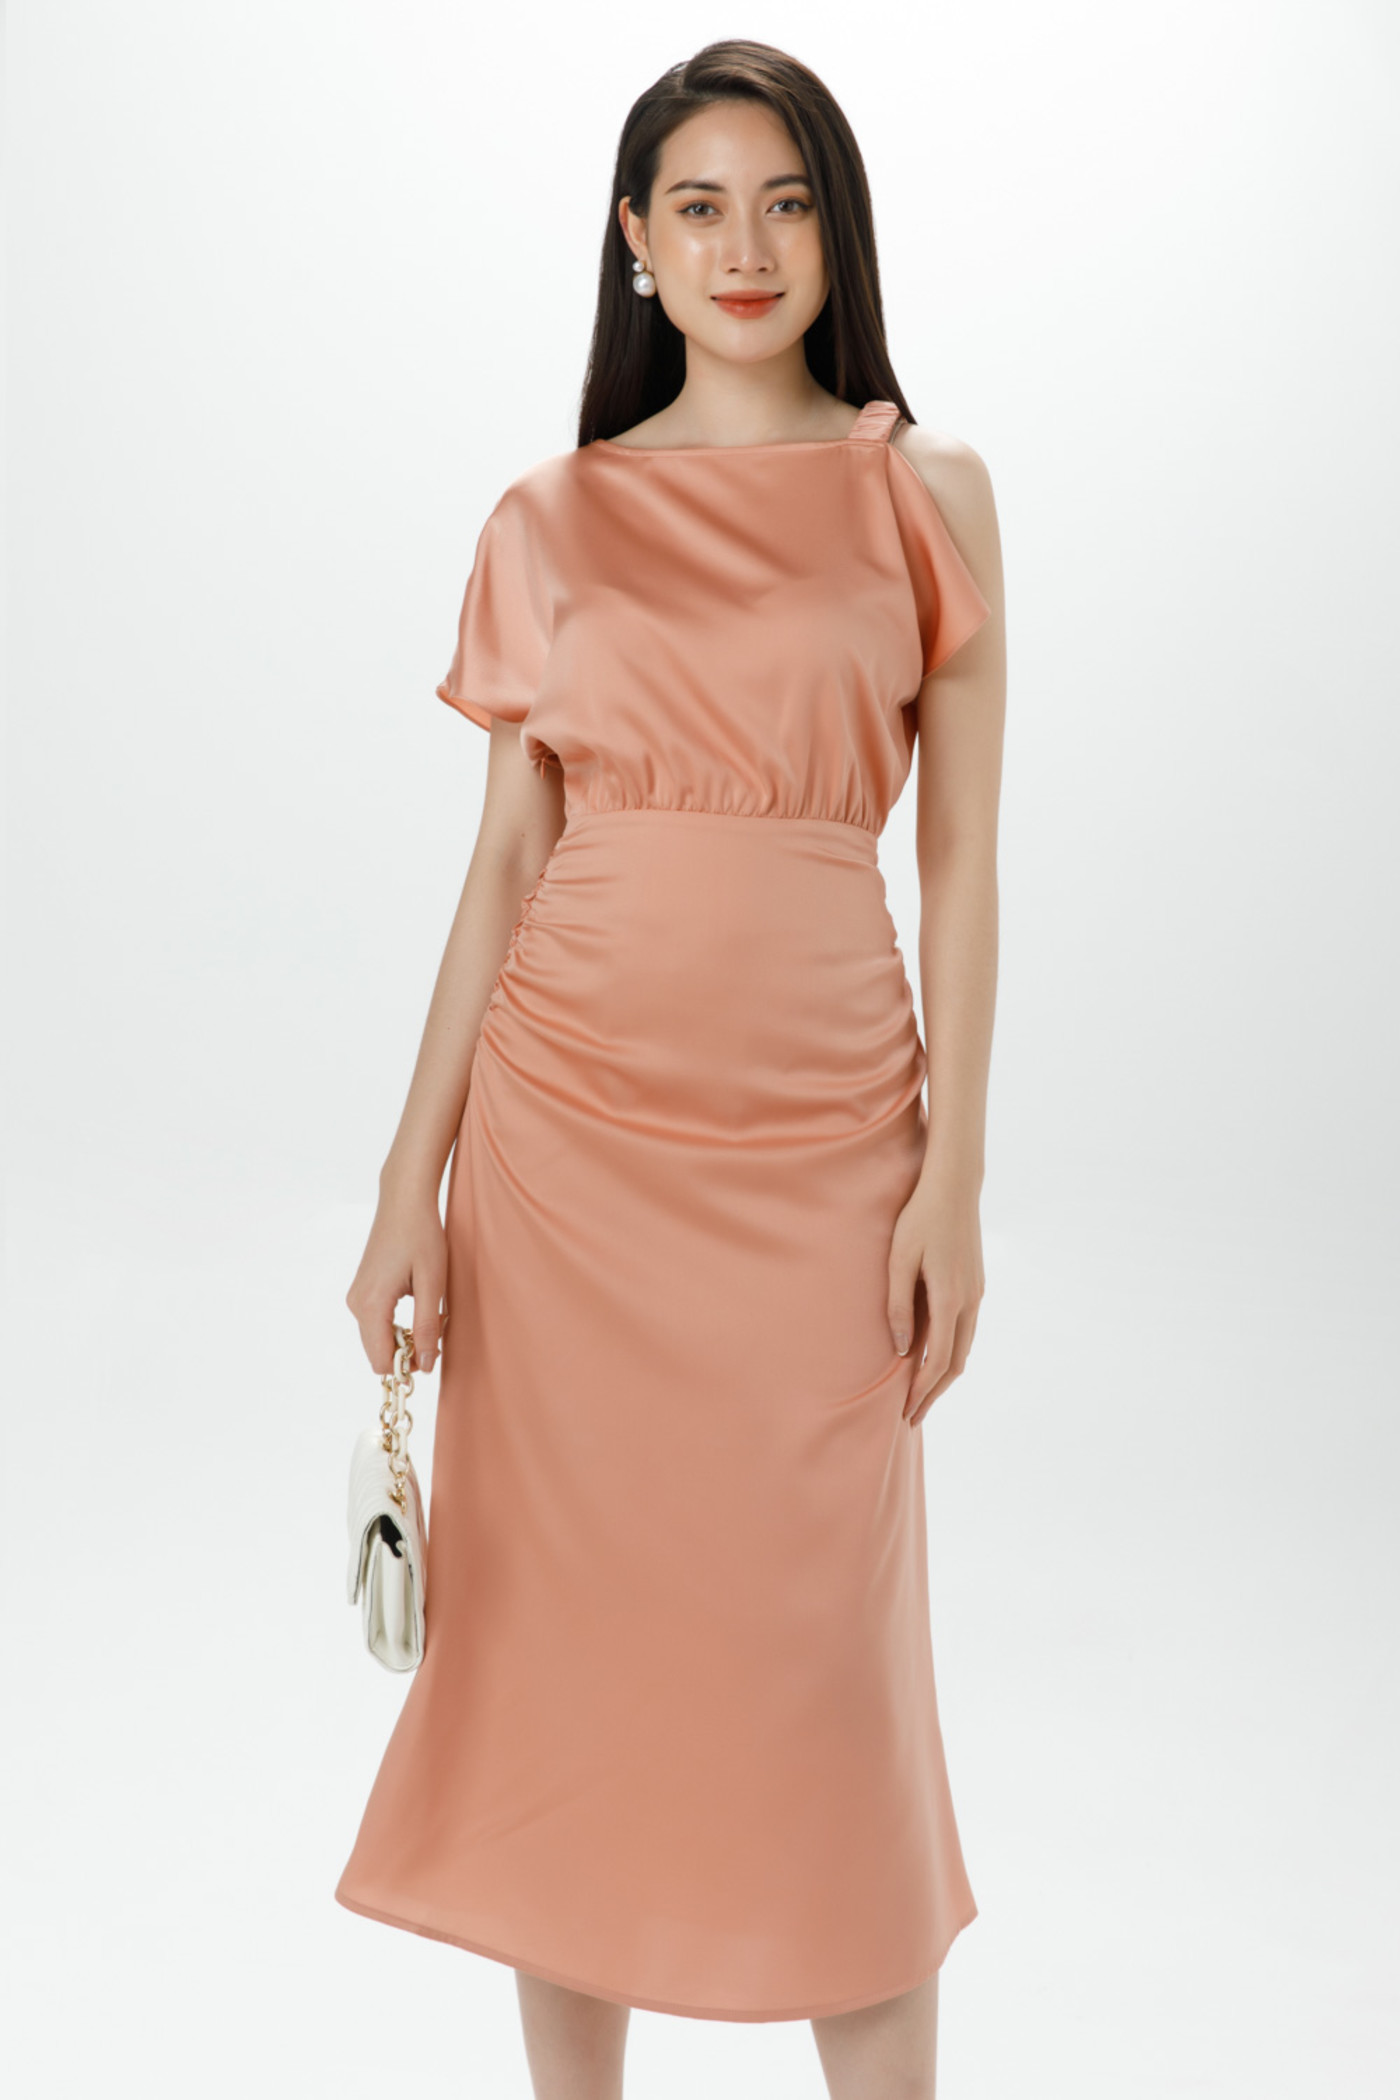 Phedra Dress - Đầm lụa lệch vai 